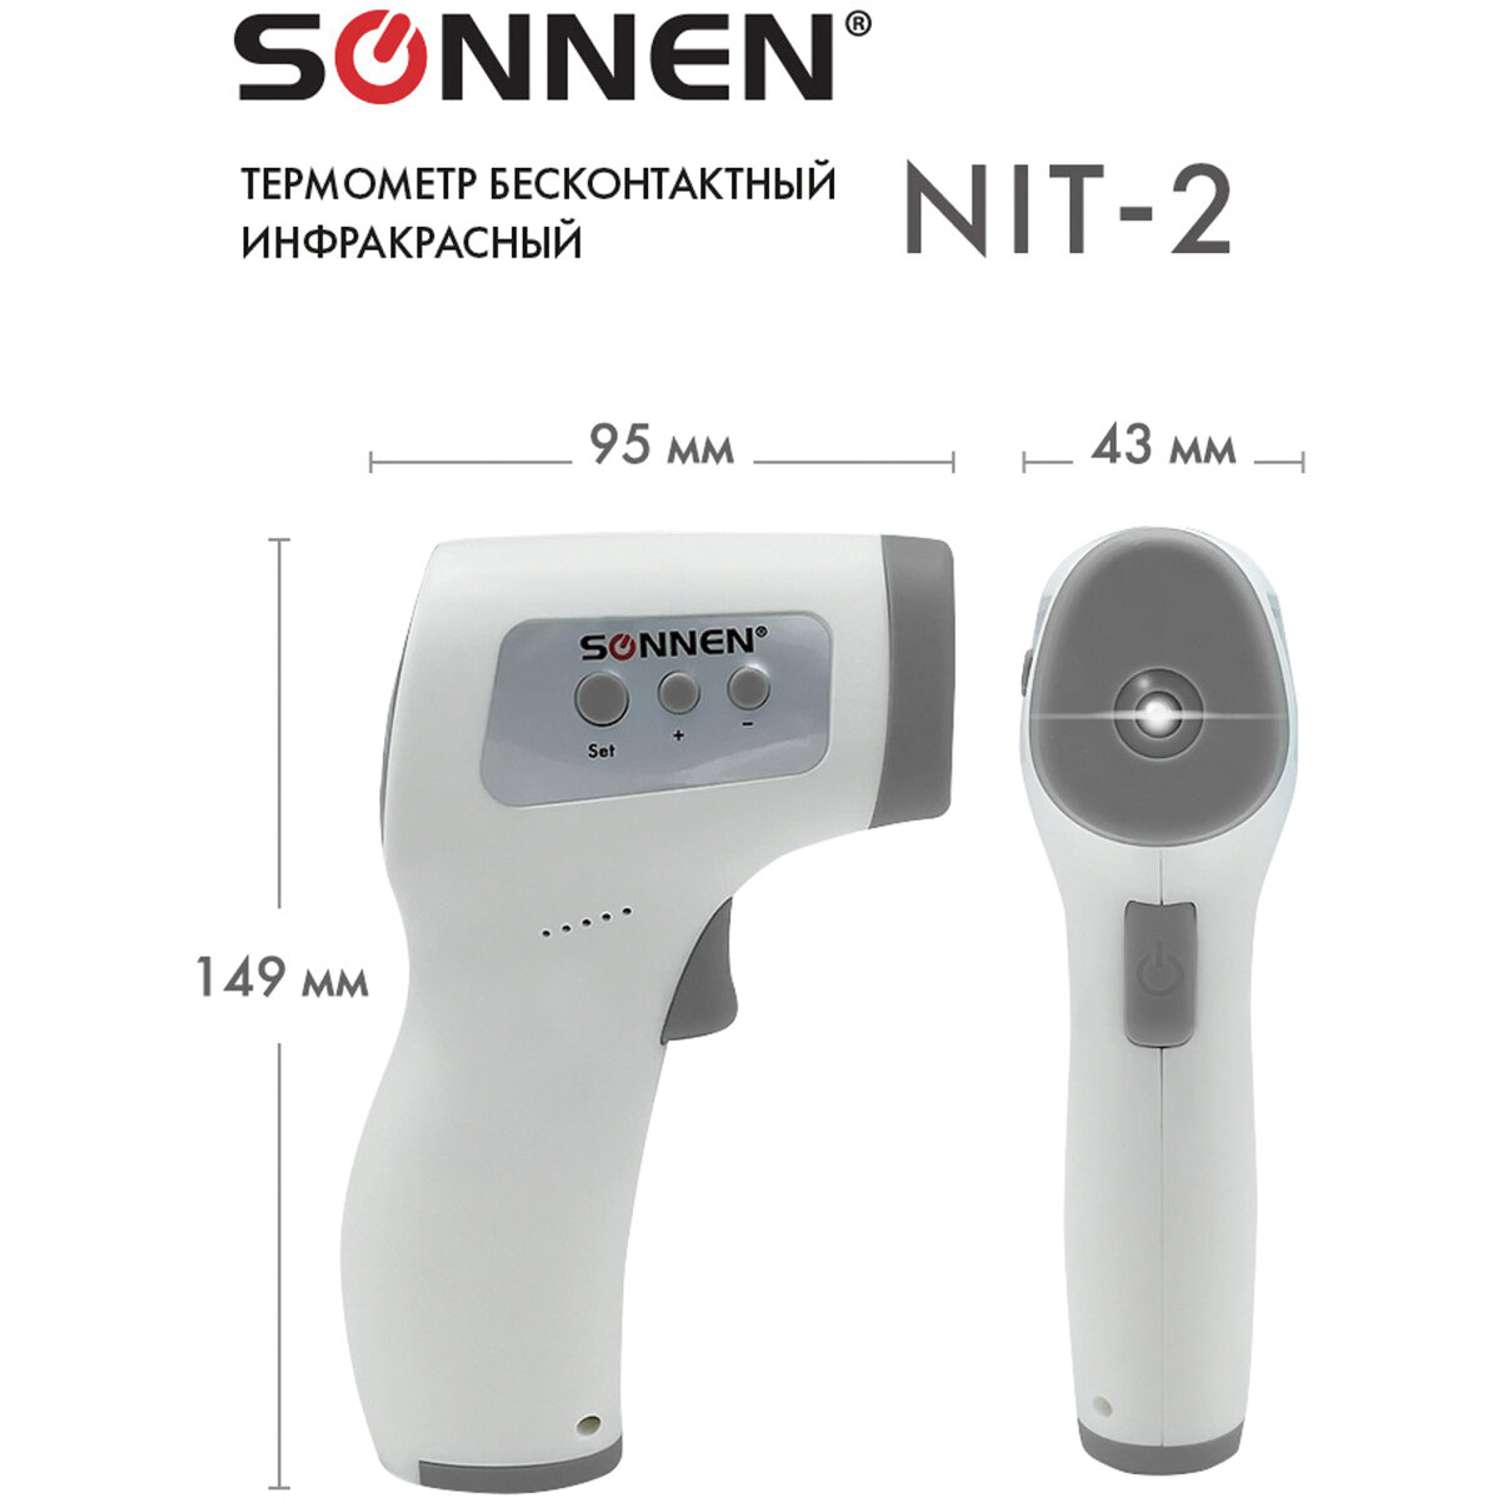 Термометр Sonnen бесконтактный инфракрасный NIT-2 GP-300 электронный - фото 10